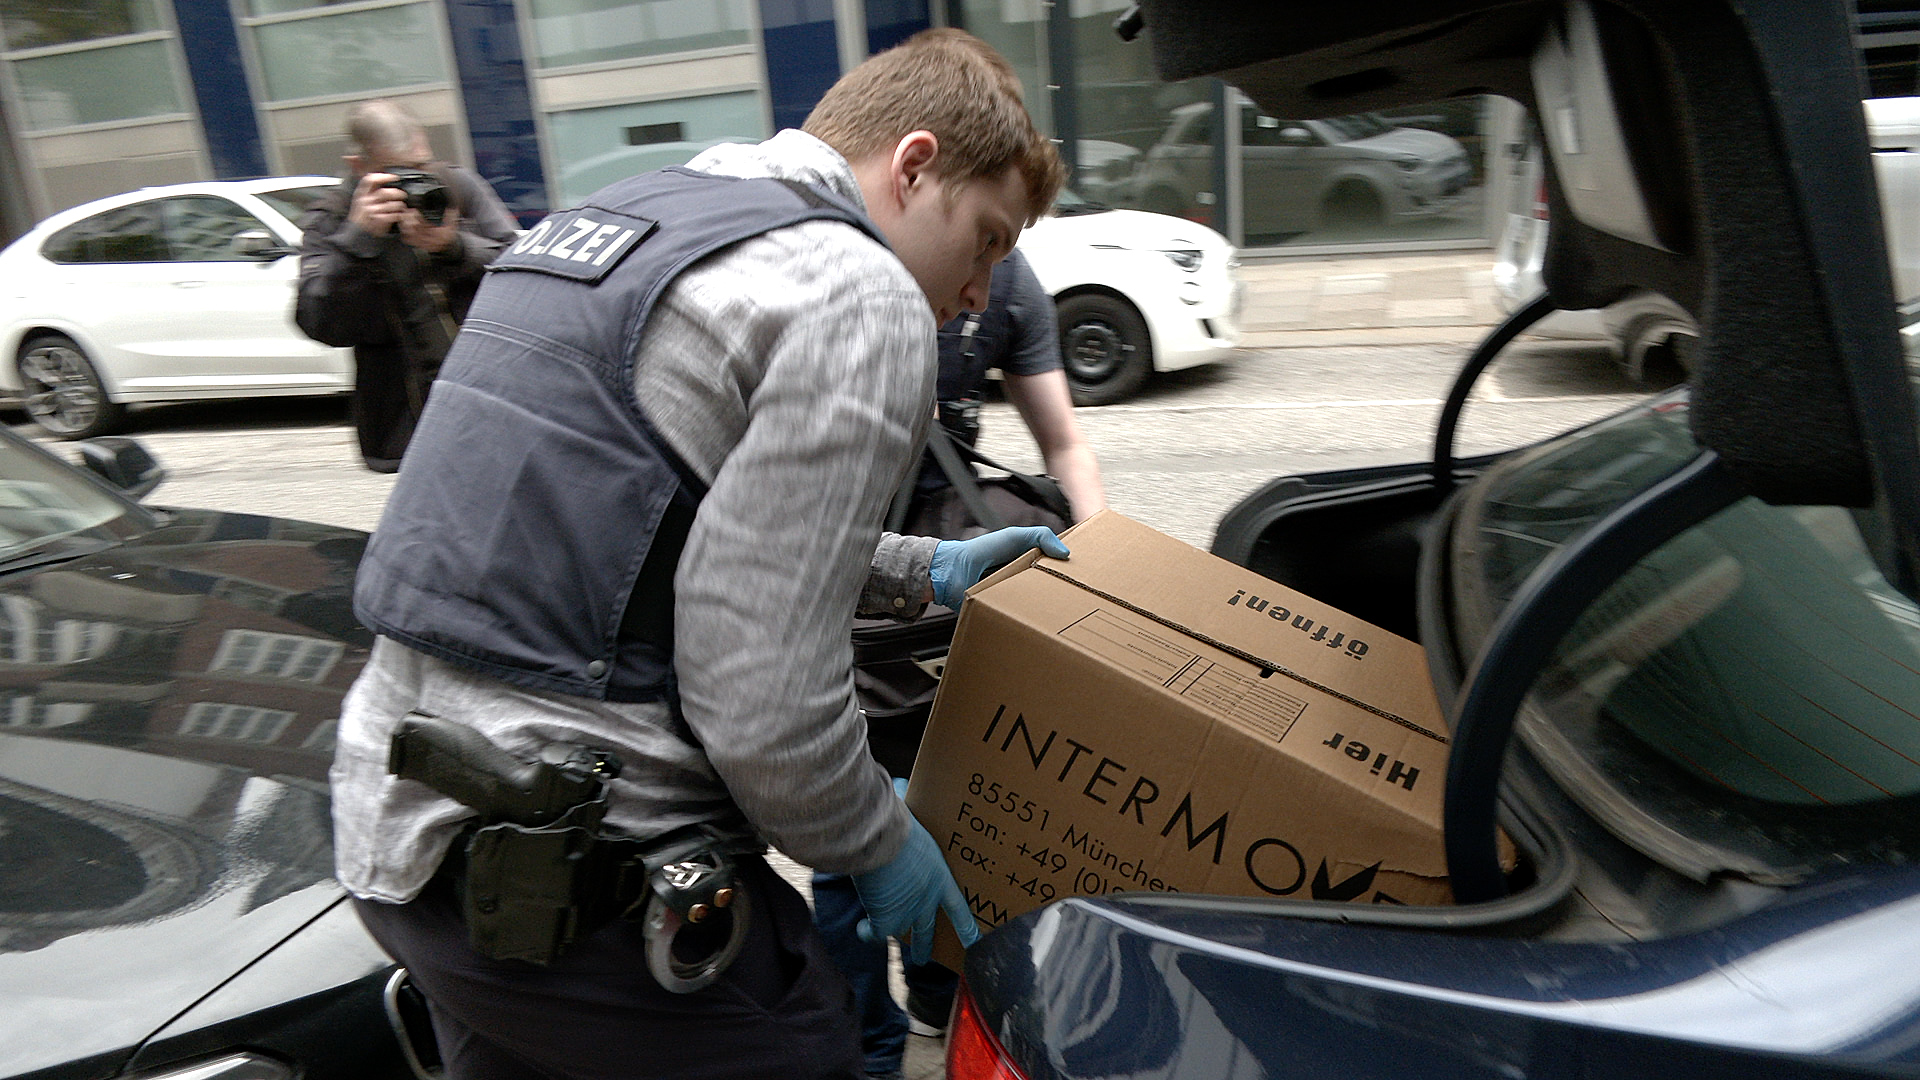 Polizisten stellen nach einer Durchsuchung einen Umzugskarton und eine Tasche in den Kofferraum eines zivilen Polizeifahrzeugs.